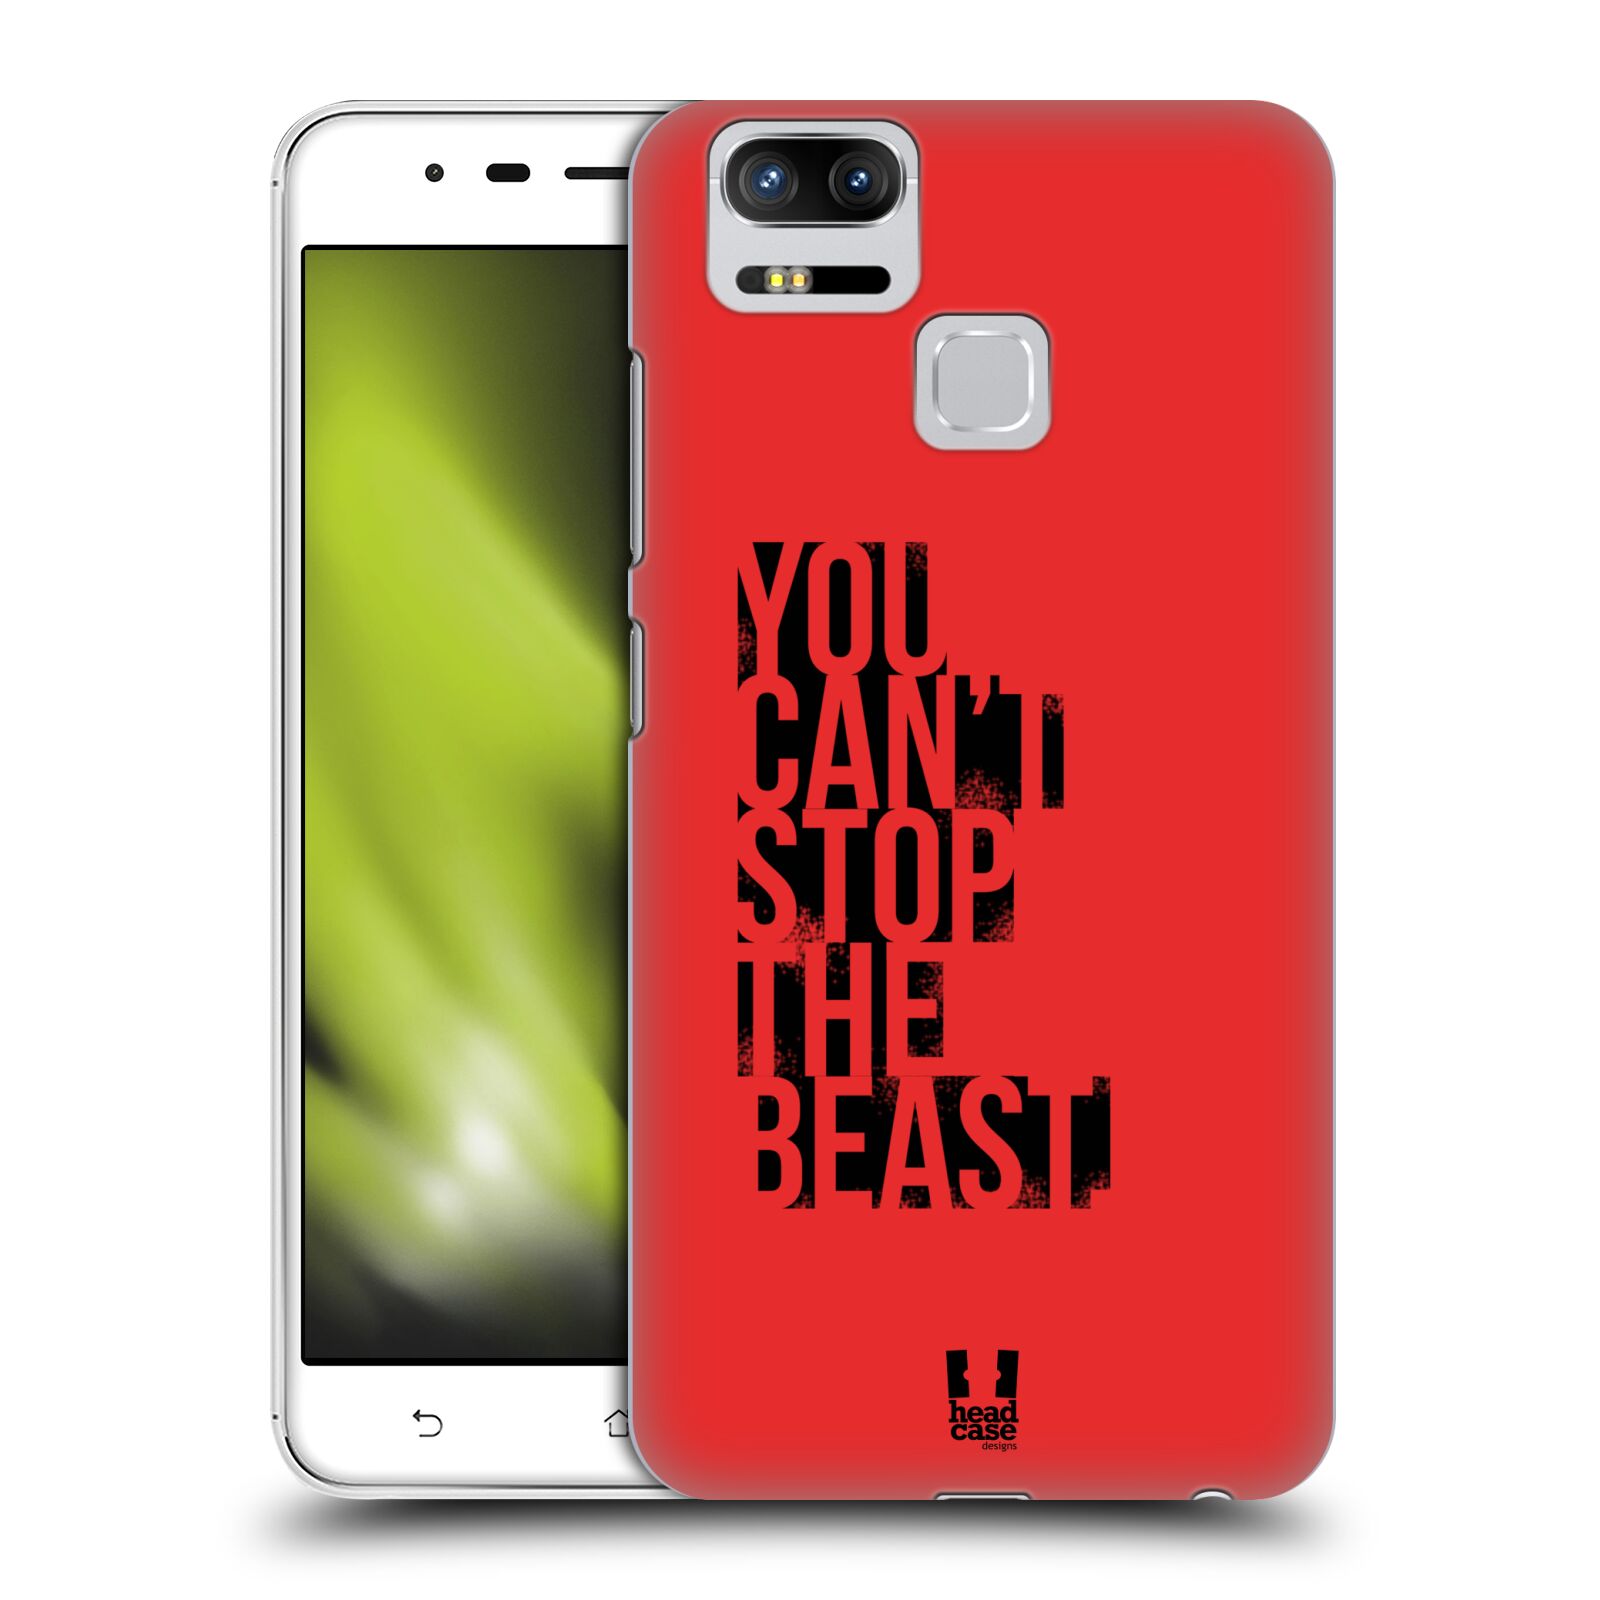 HEAD CASE plastový obal na mobil Asus Zenfone 3 Zoom ZE553KL Sportovní tématika Beast mode červená